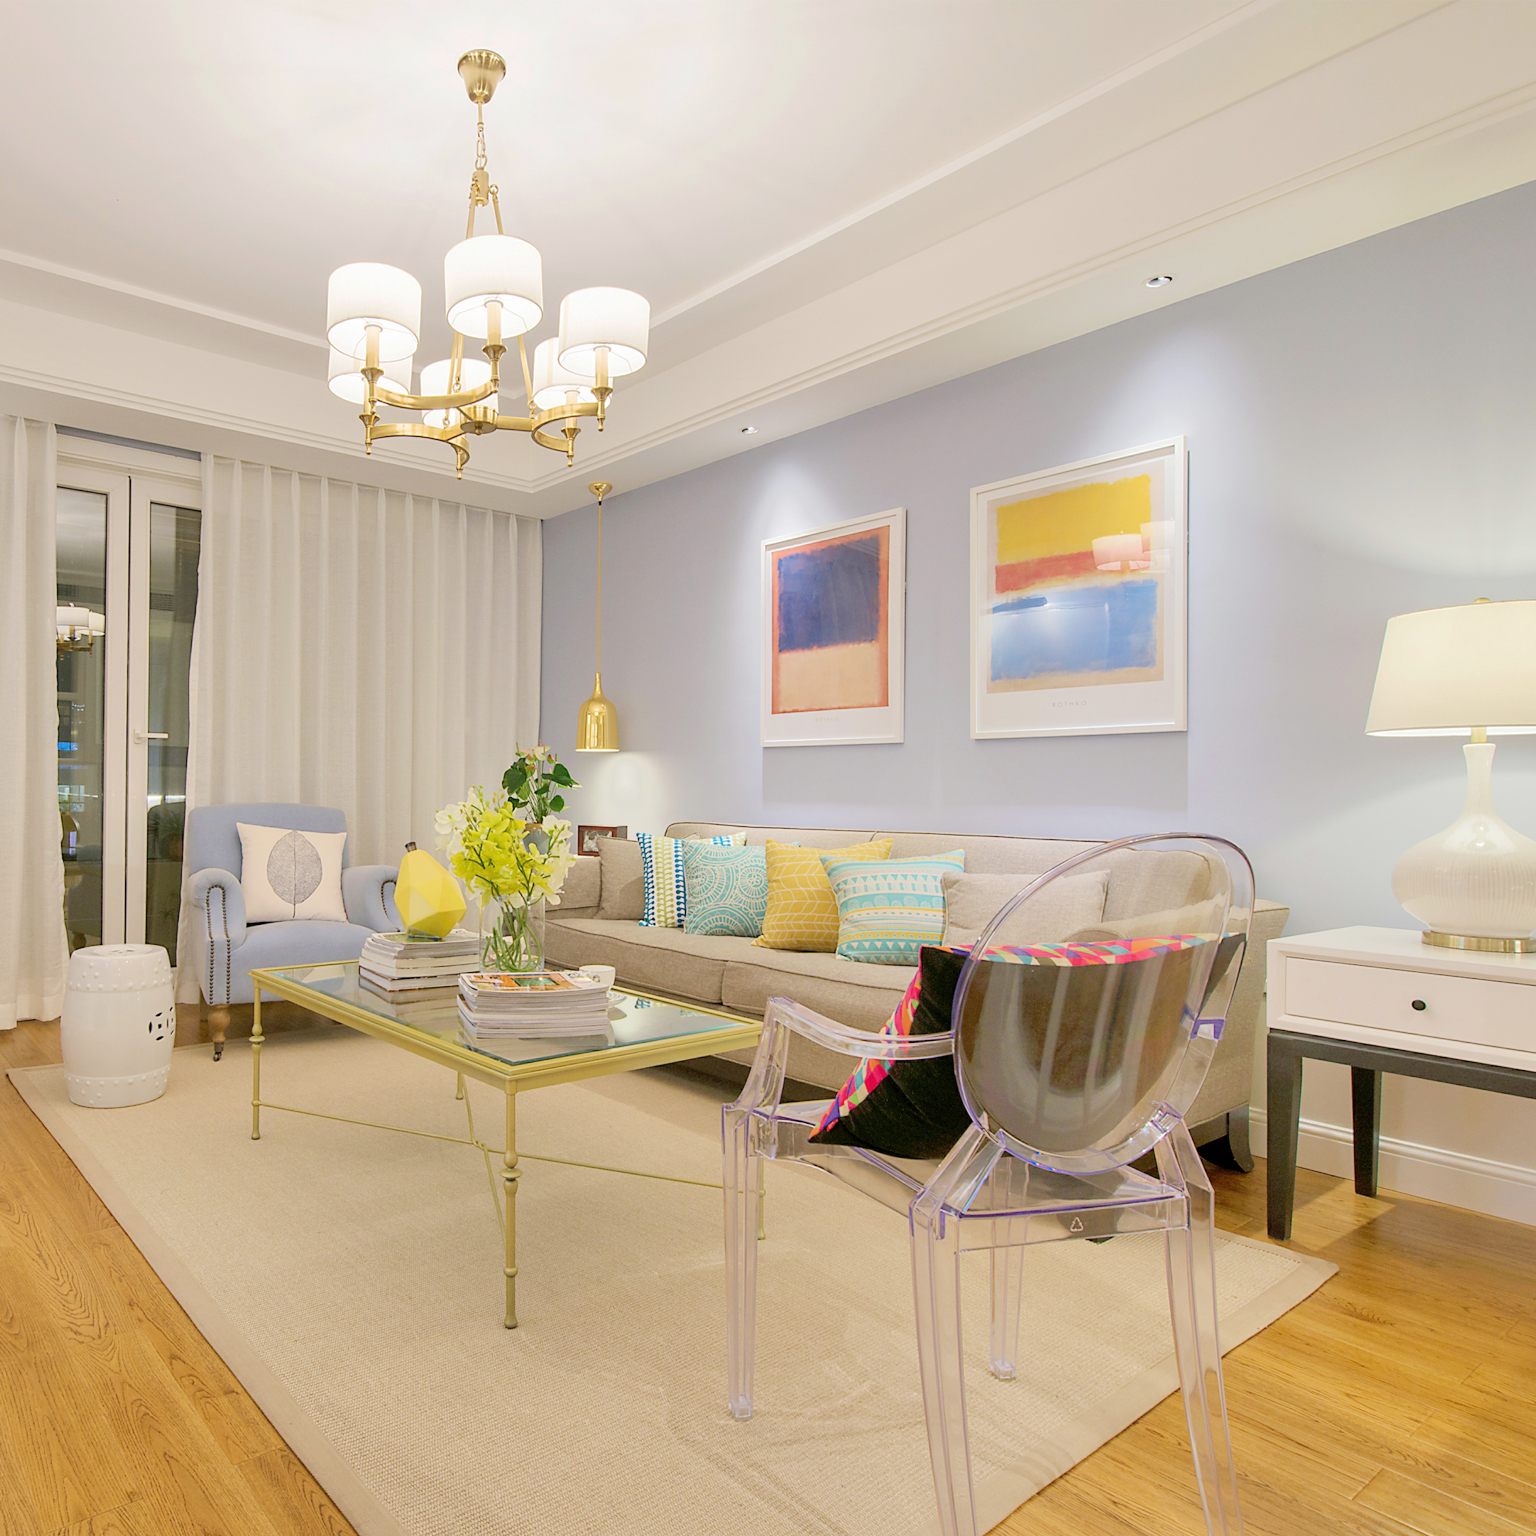 整体客厅空间以蓝、灰、米、金色合成一气，没有太过累赘的装饰，简约但不失个性，点点细节透露着美式风情。